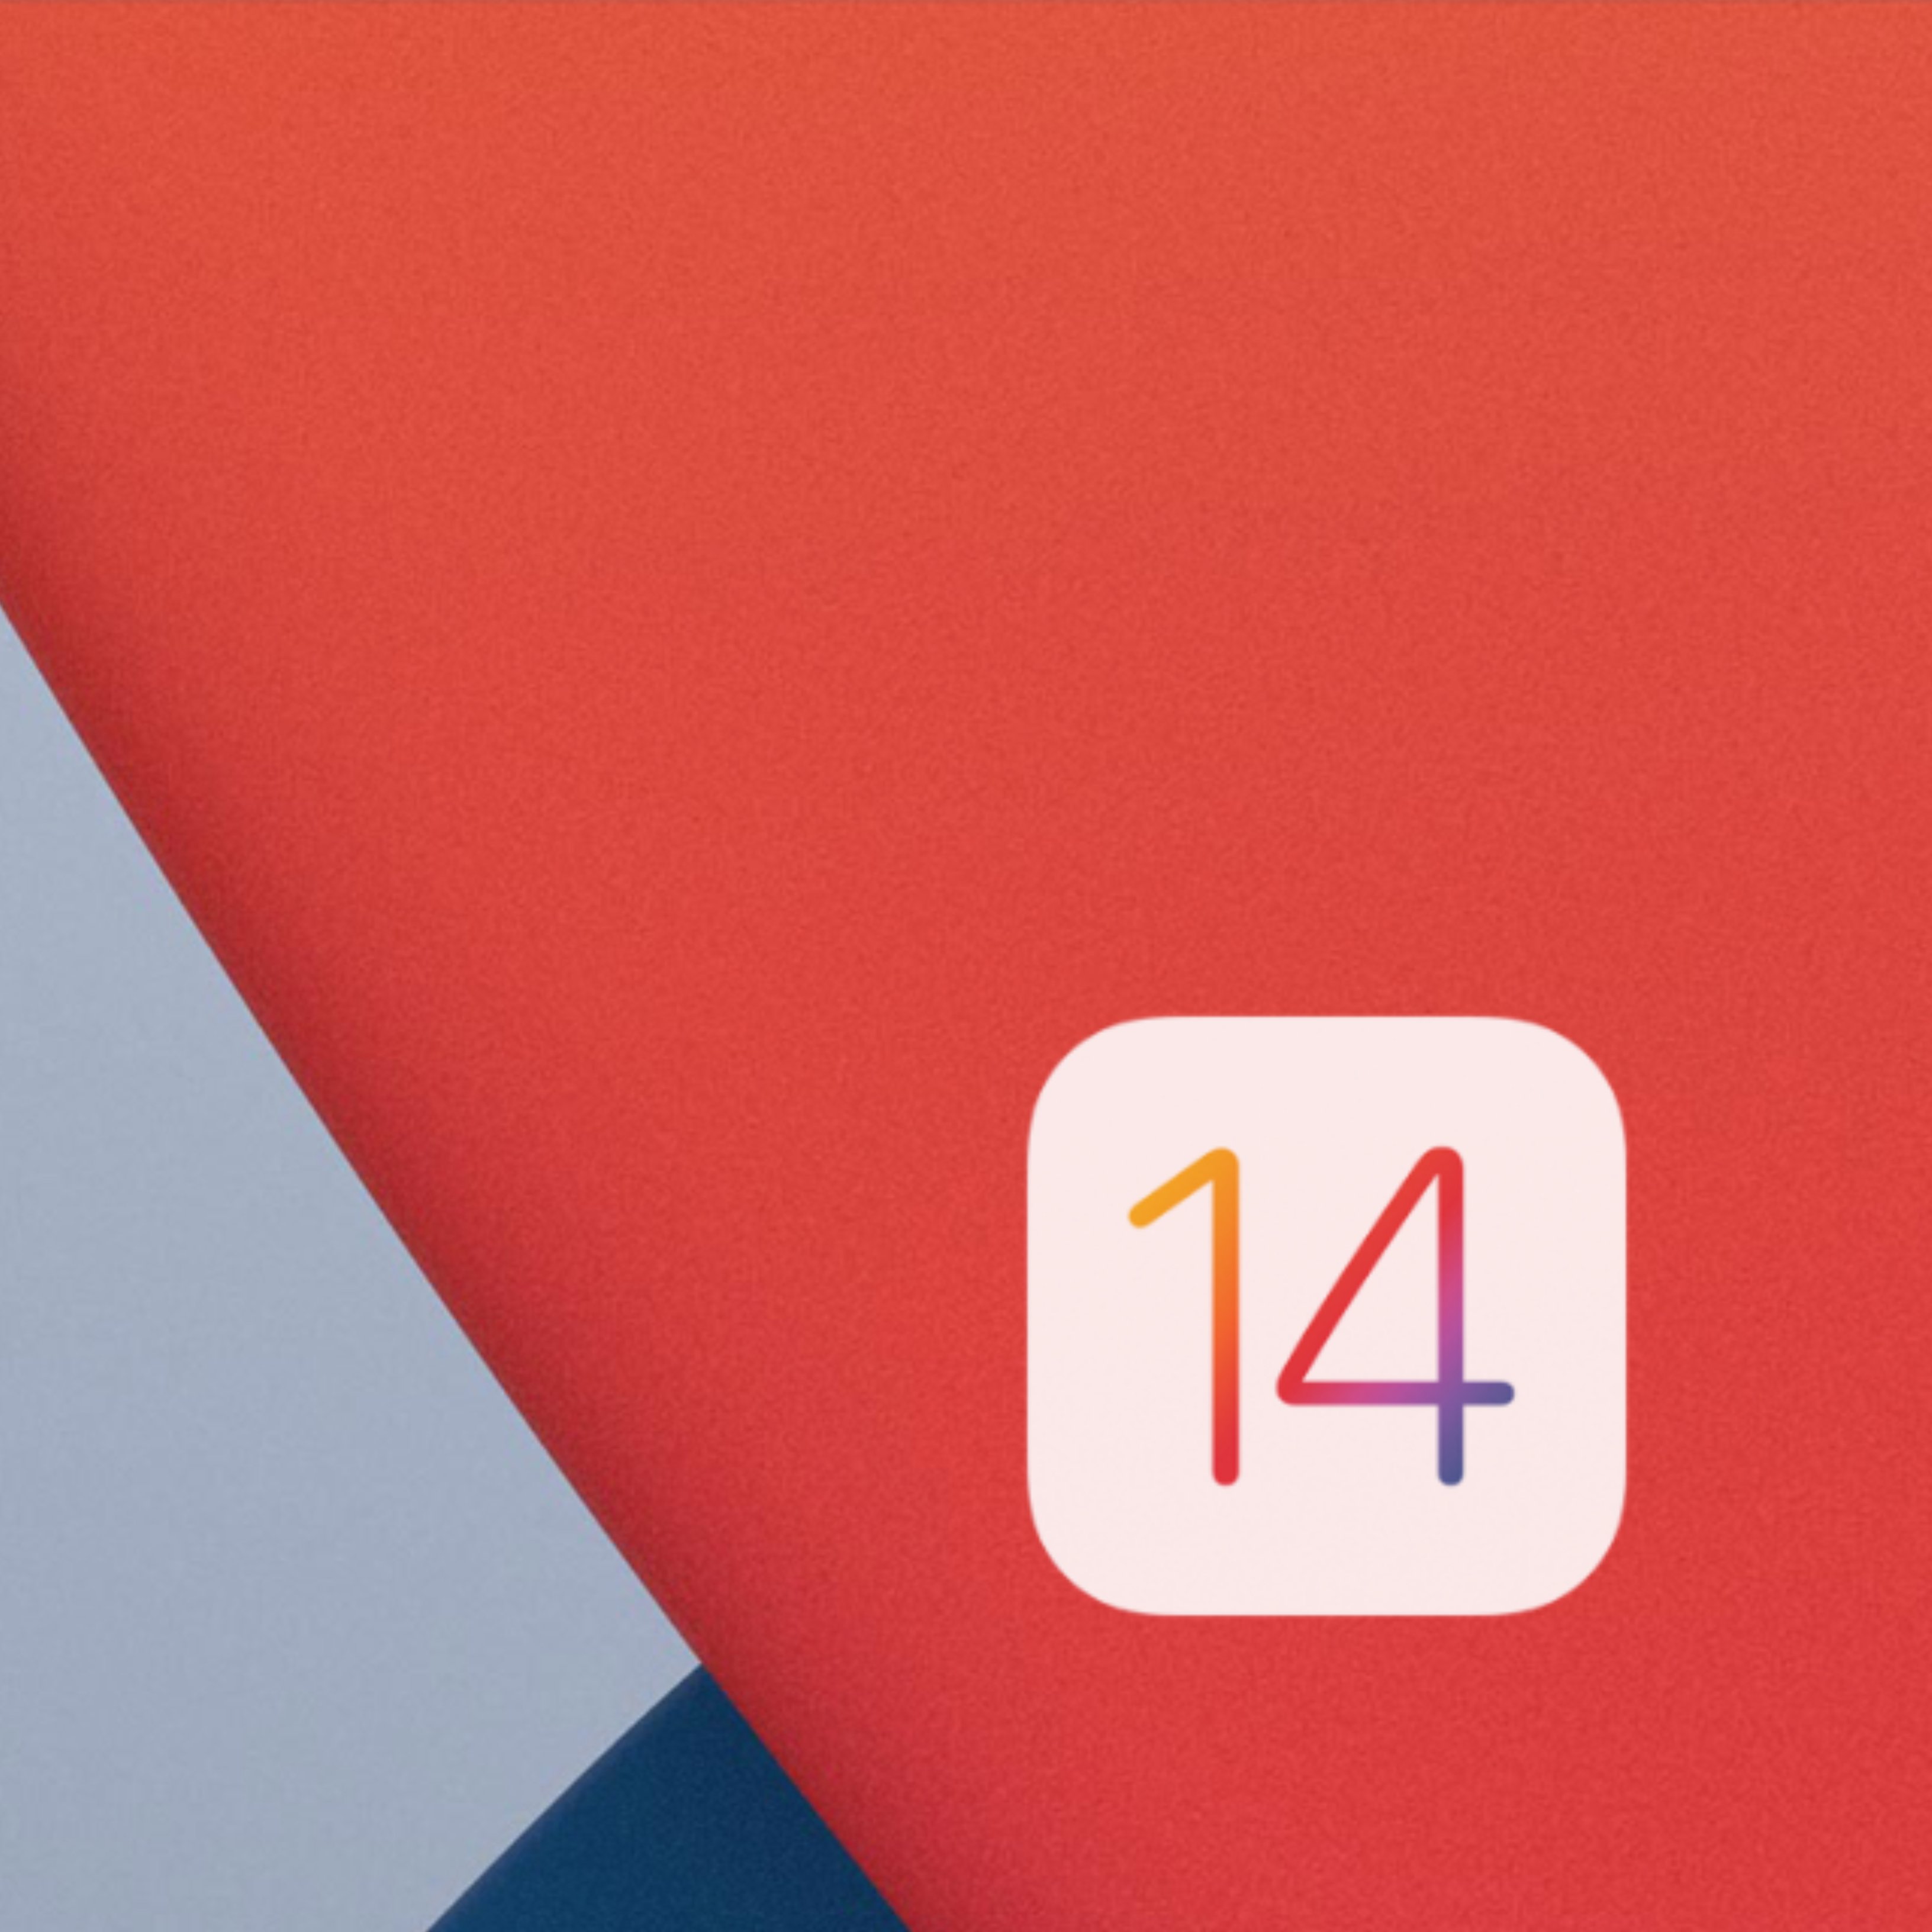 Actualitza ara el teu iPhone a iOS 14 i descobreix-ne les principals novetats